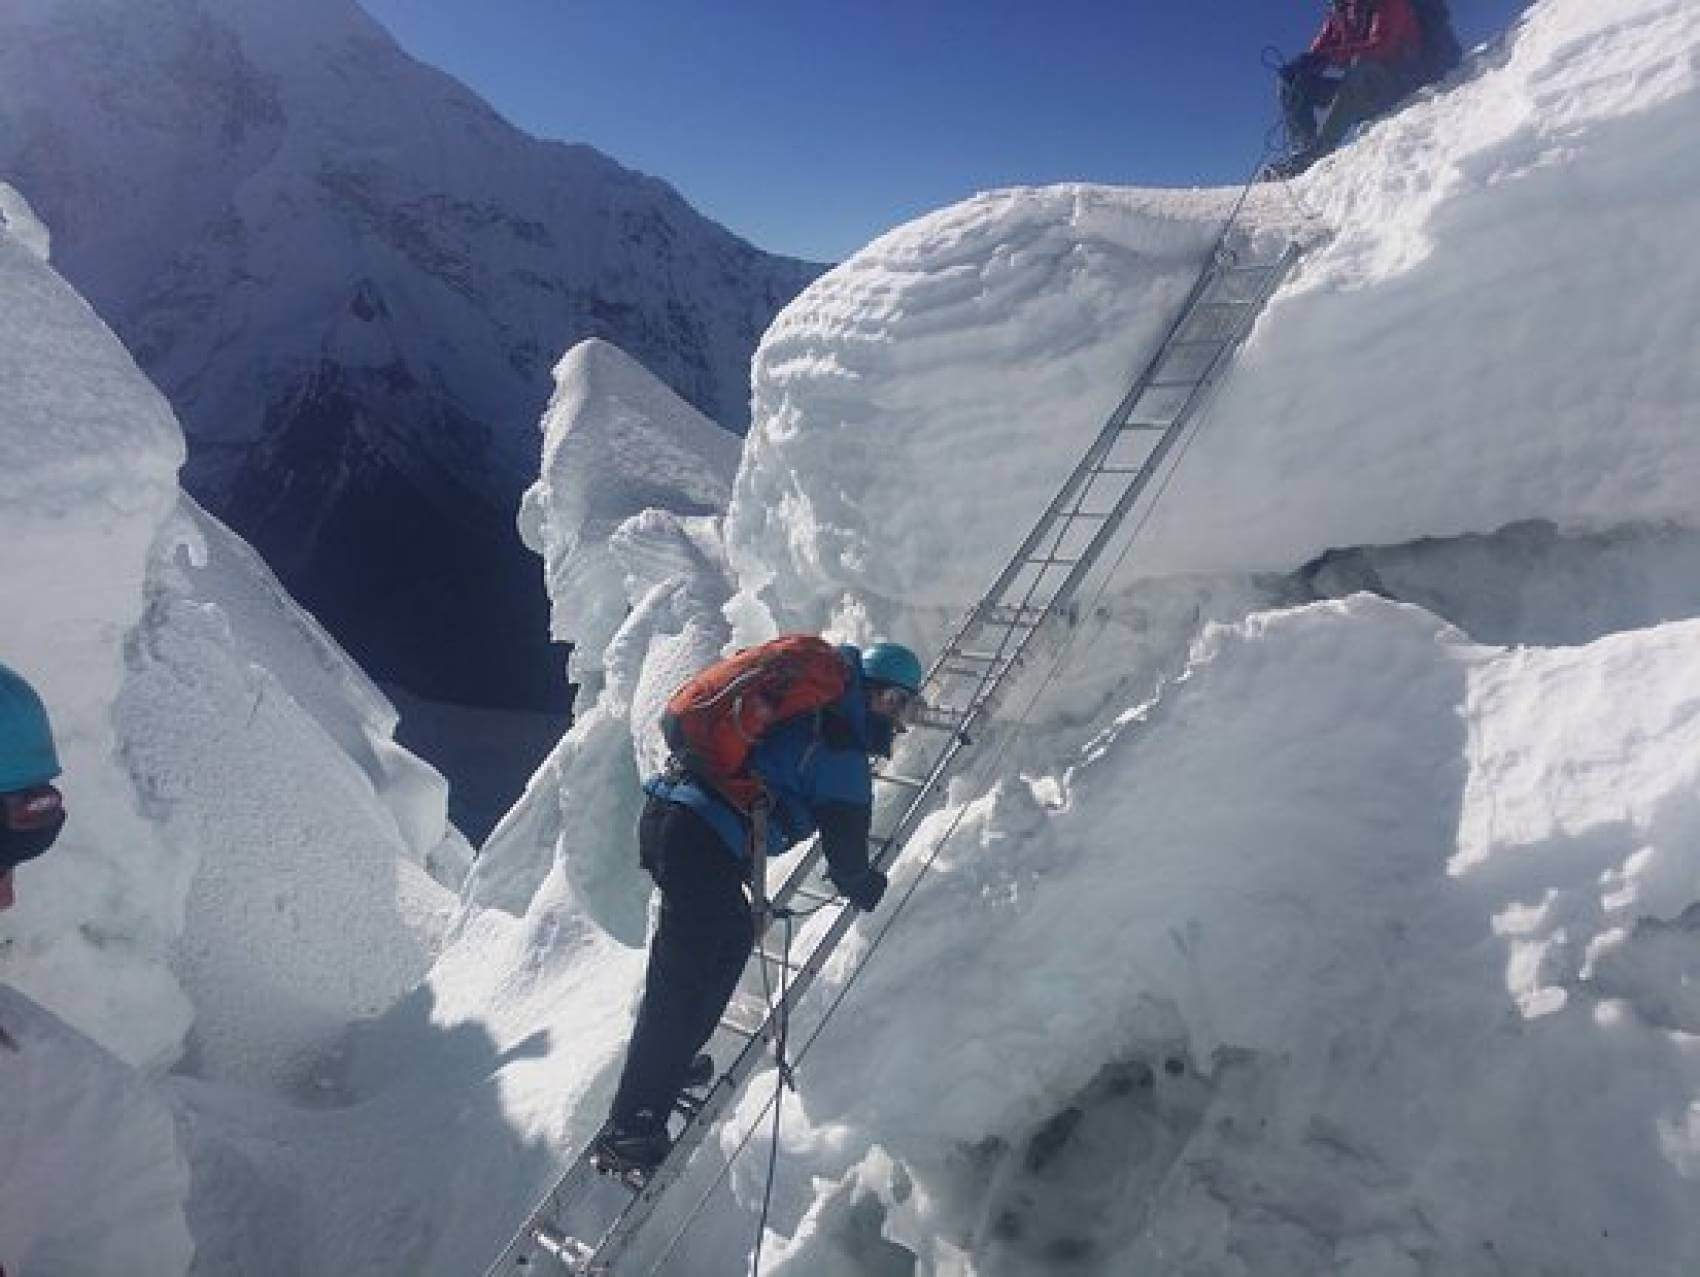 Norbu Sherpa